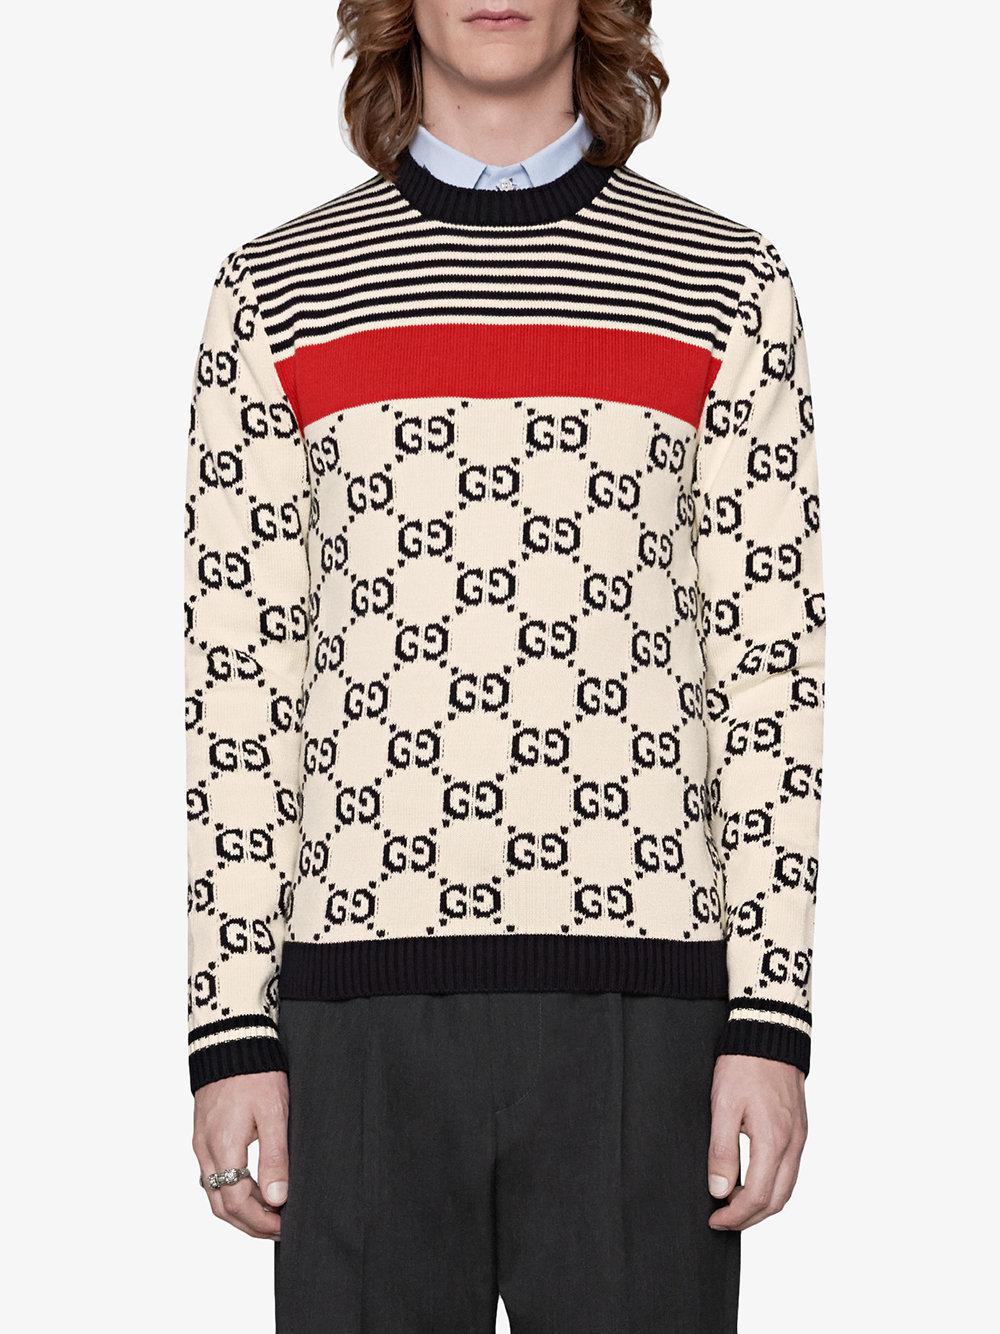 Gucci Gg Intarsia Cotton Sweater in 